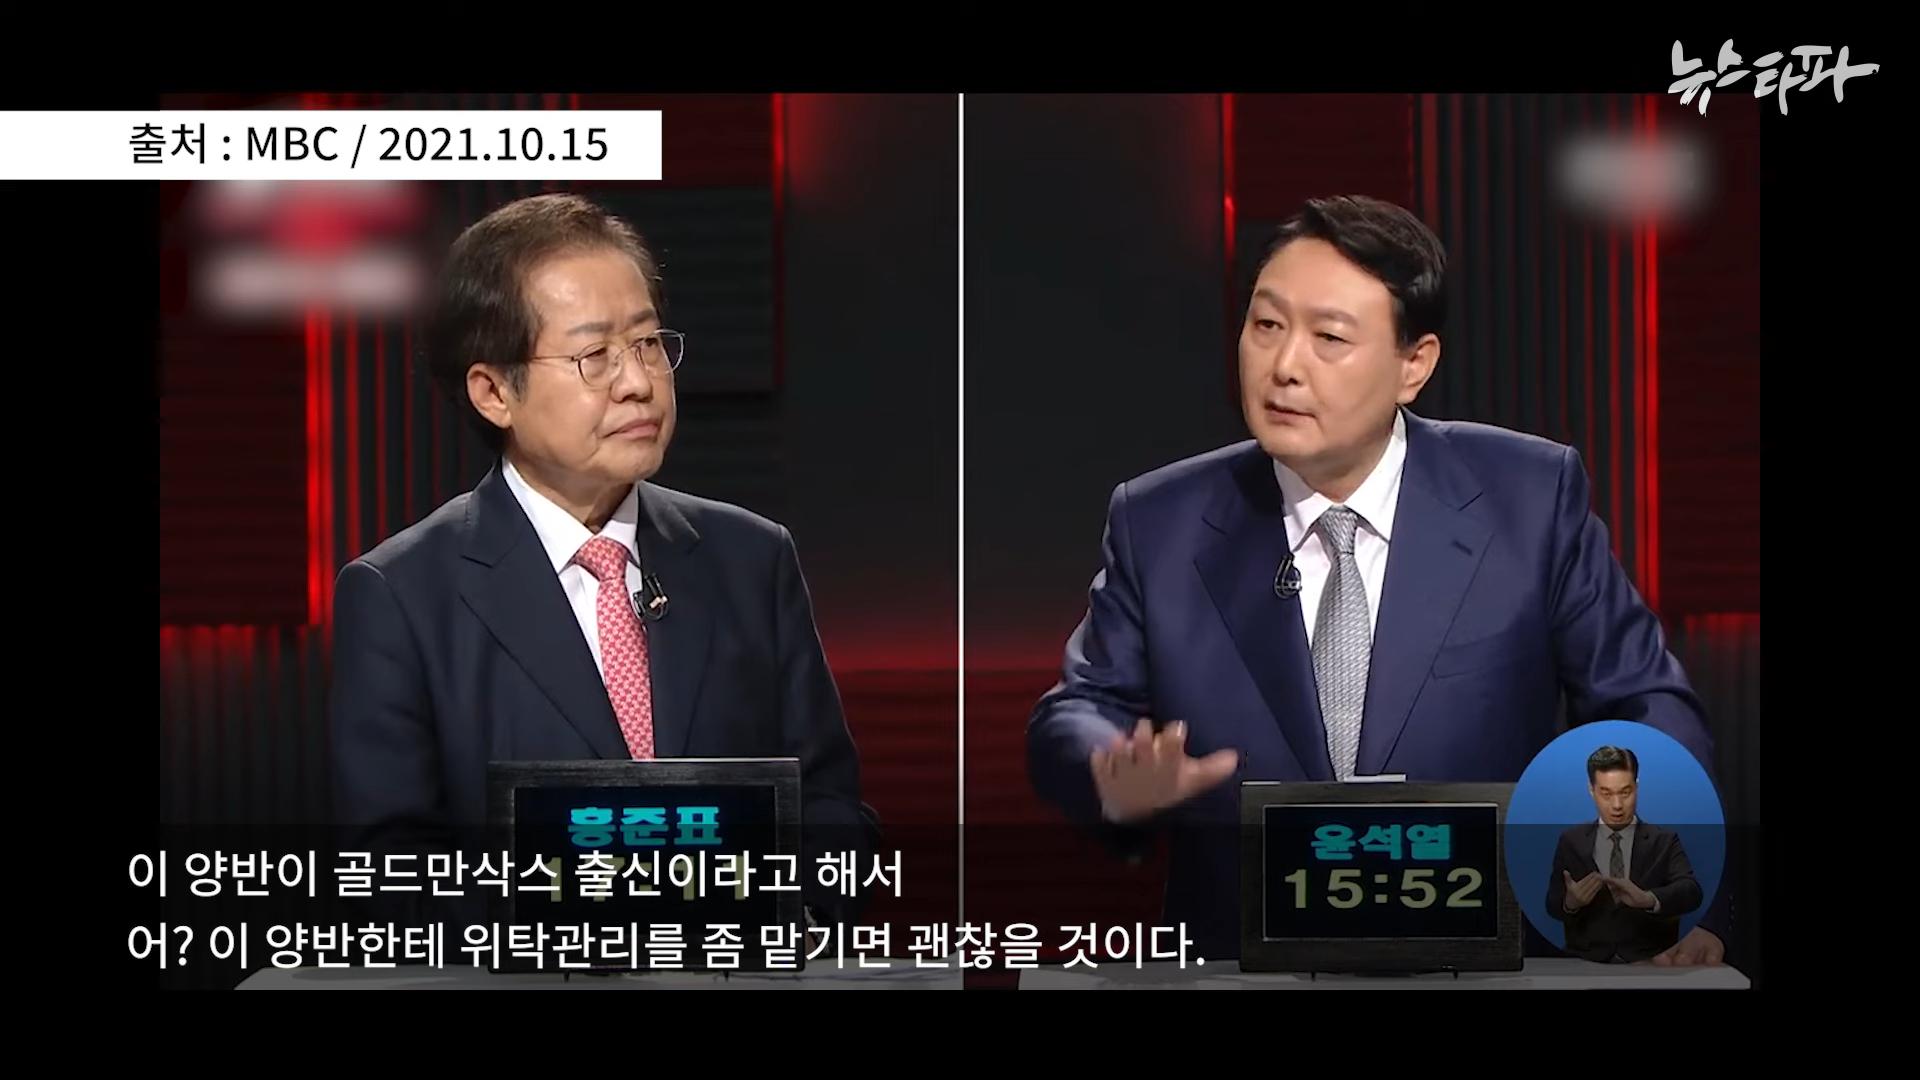 김건희 도이치모터스 녹취록 공개. 대통령 거짓말 드러났다 - 뉴스타파 3-7 screenshot.png.jpg